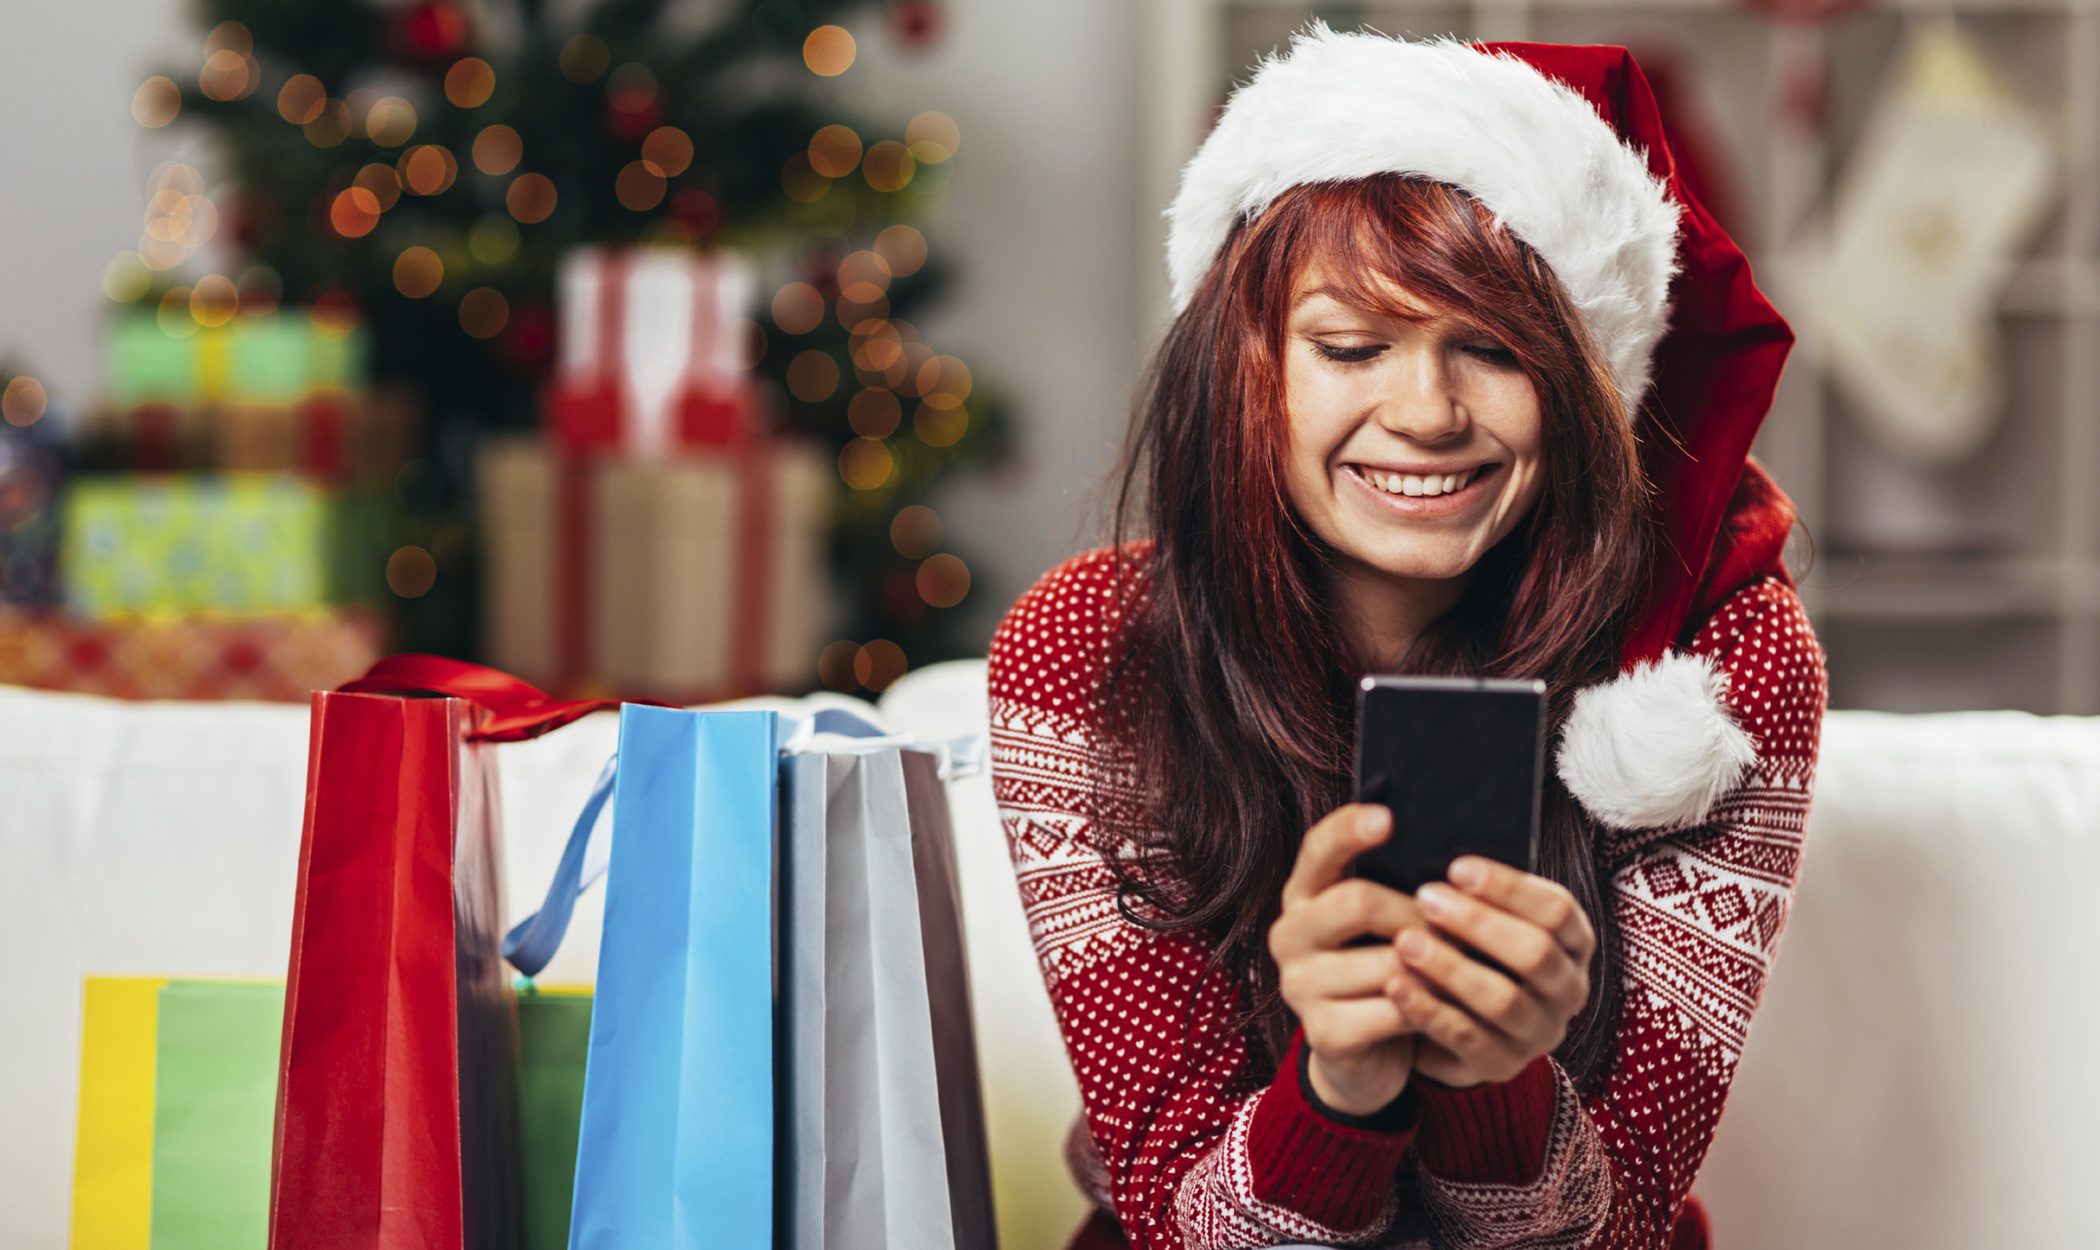 Ideas de SMS y Whatsapp para felicitar la Navidad